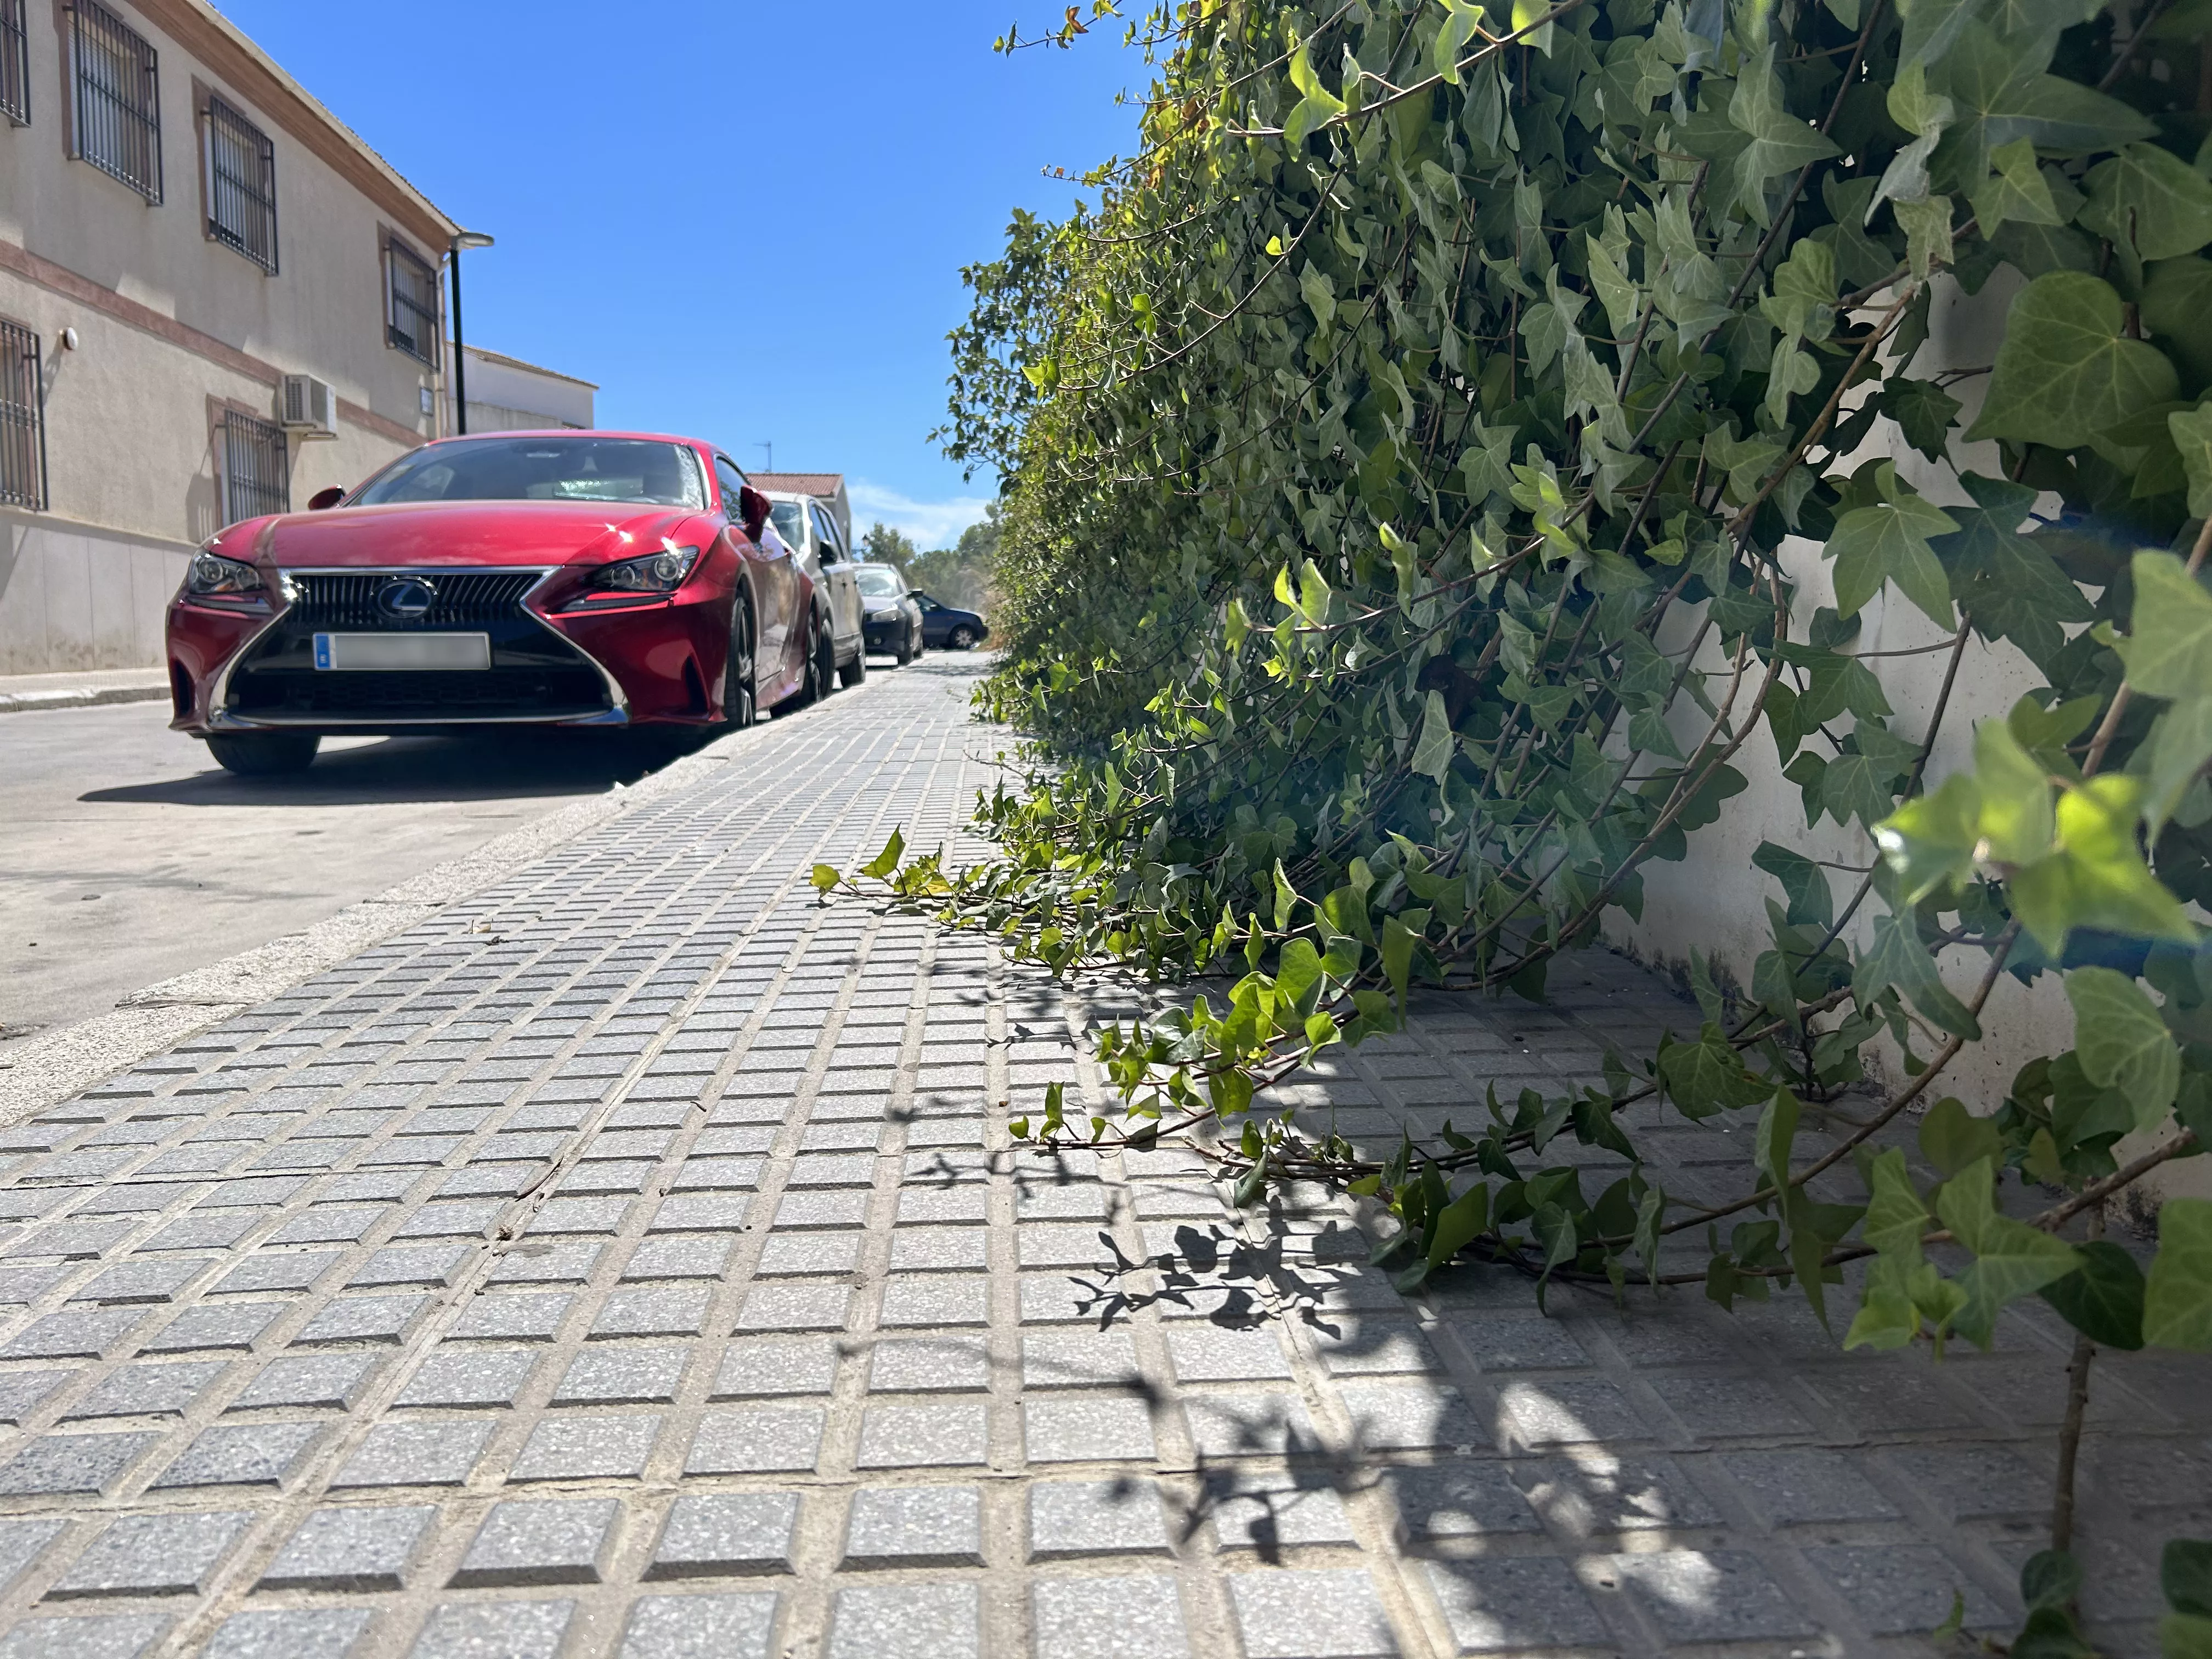 Los vecinos señalan que las plantas ocupan ya buena parte de la acera en la calle Arcas